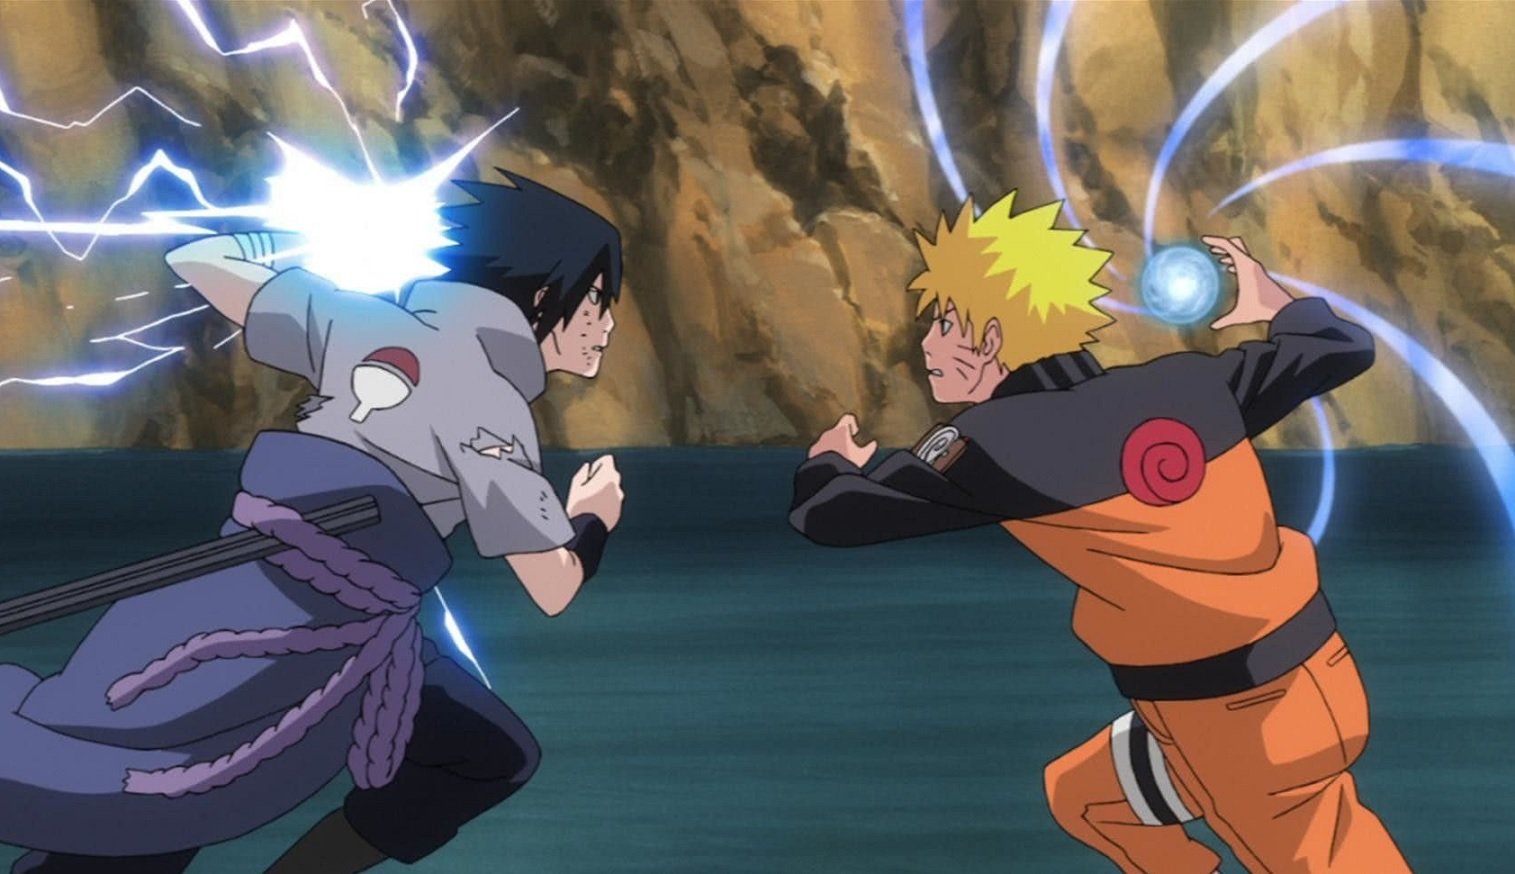 Naruto Classico – Ep 41. Confronto de rivais!!! Os corações das